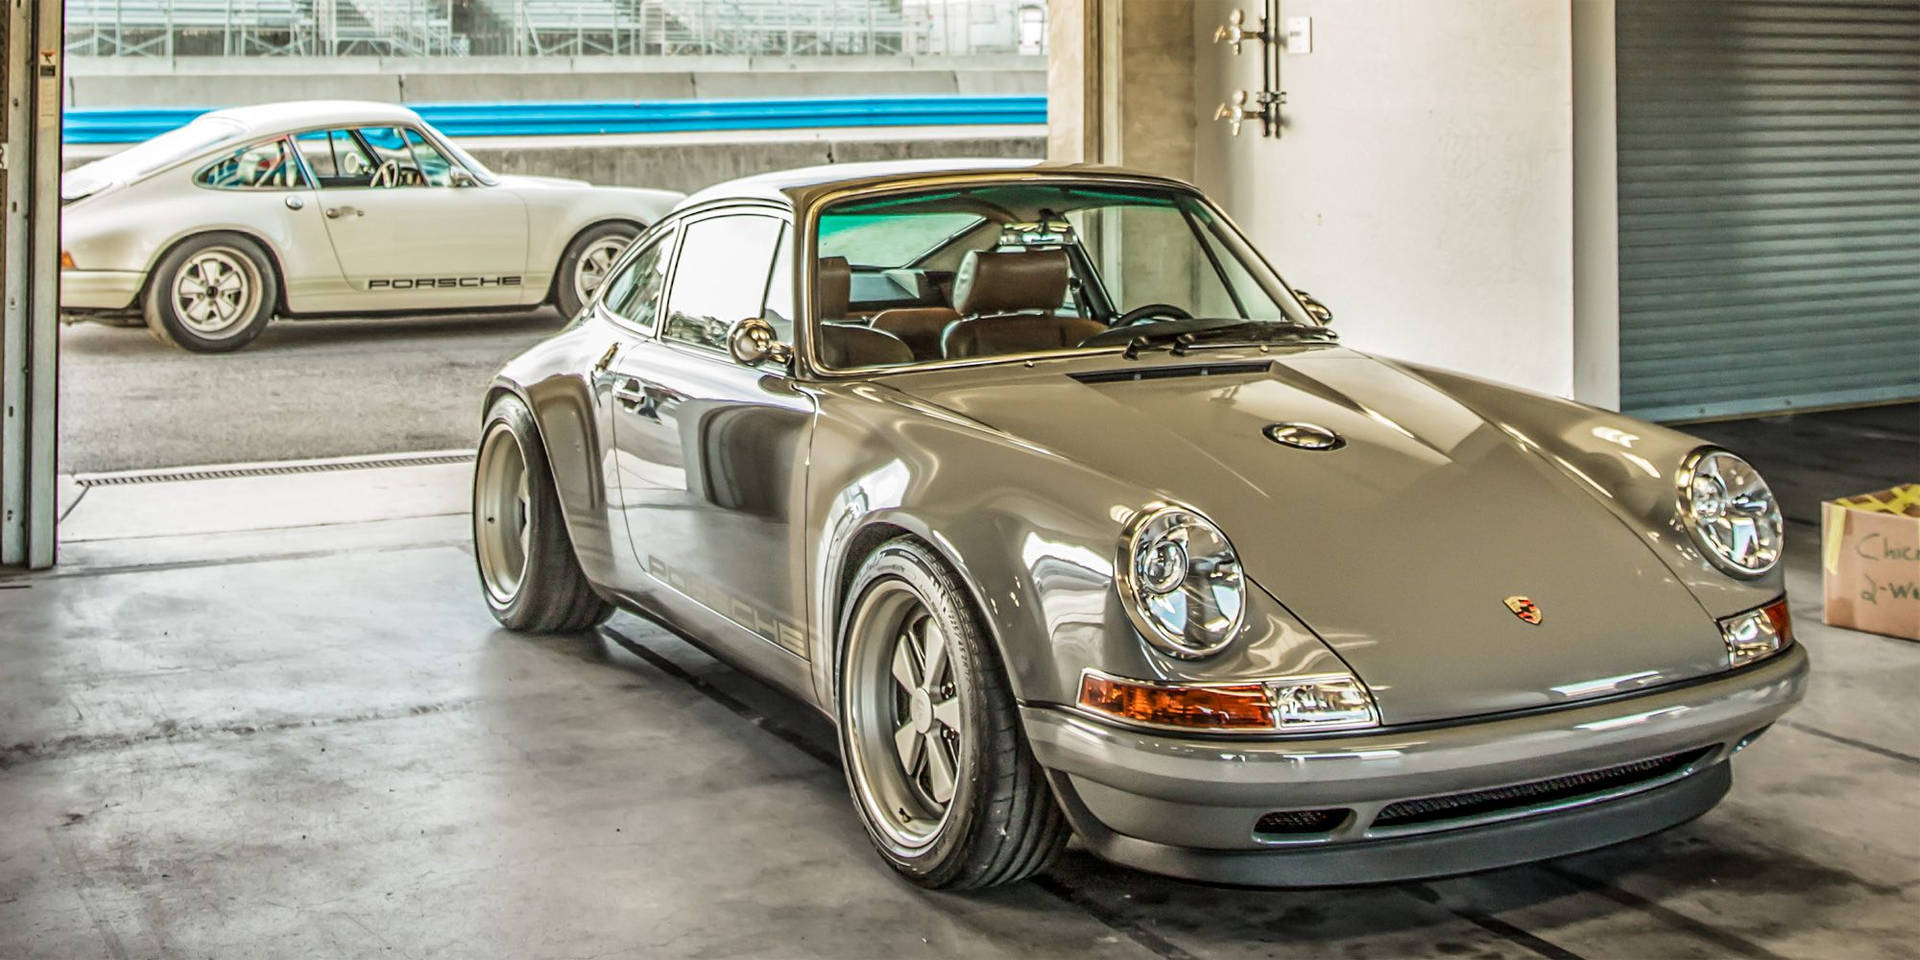 Singer Porsche 911 Turbo Cars Wallpaper